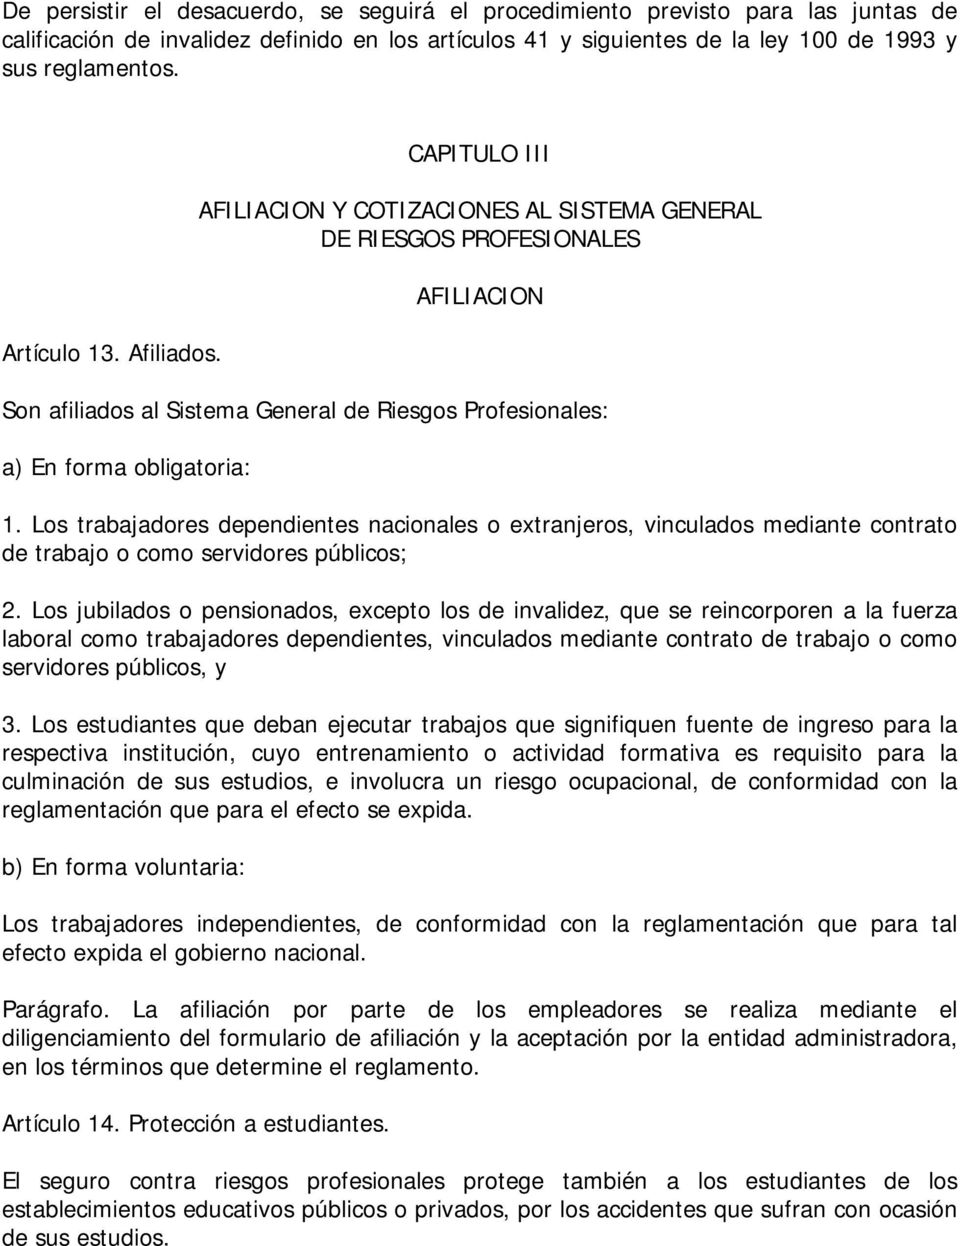 CAPITULO III AFILIACION Y COTIZACIONES AL SISTEMA GENERAL DE RIESGOS PROFESIONALES AFILIACION Son afiliados al Sistema General de Riesgos Profesionales: a) En forma obligatoria: 1.